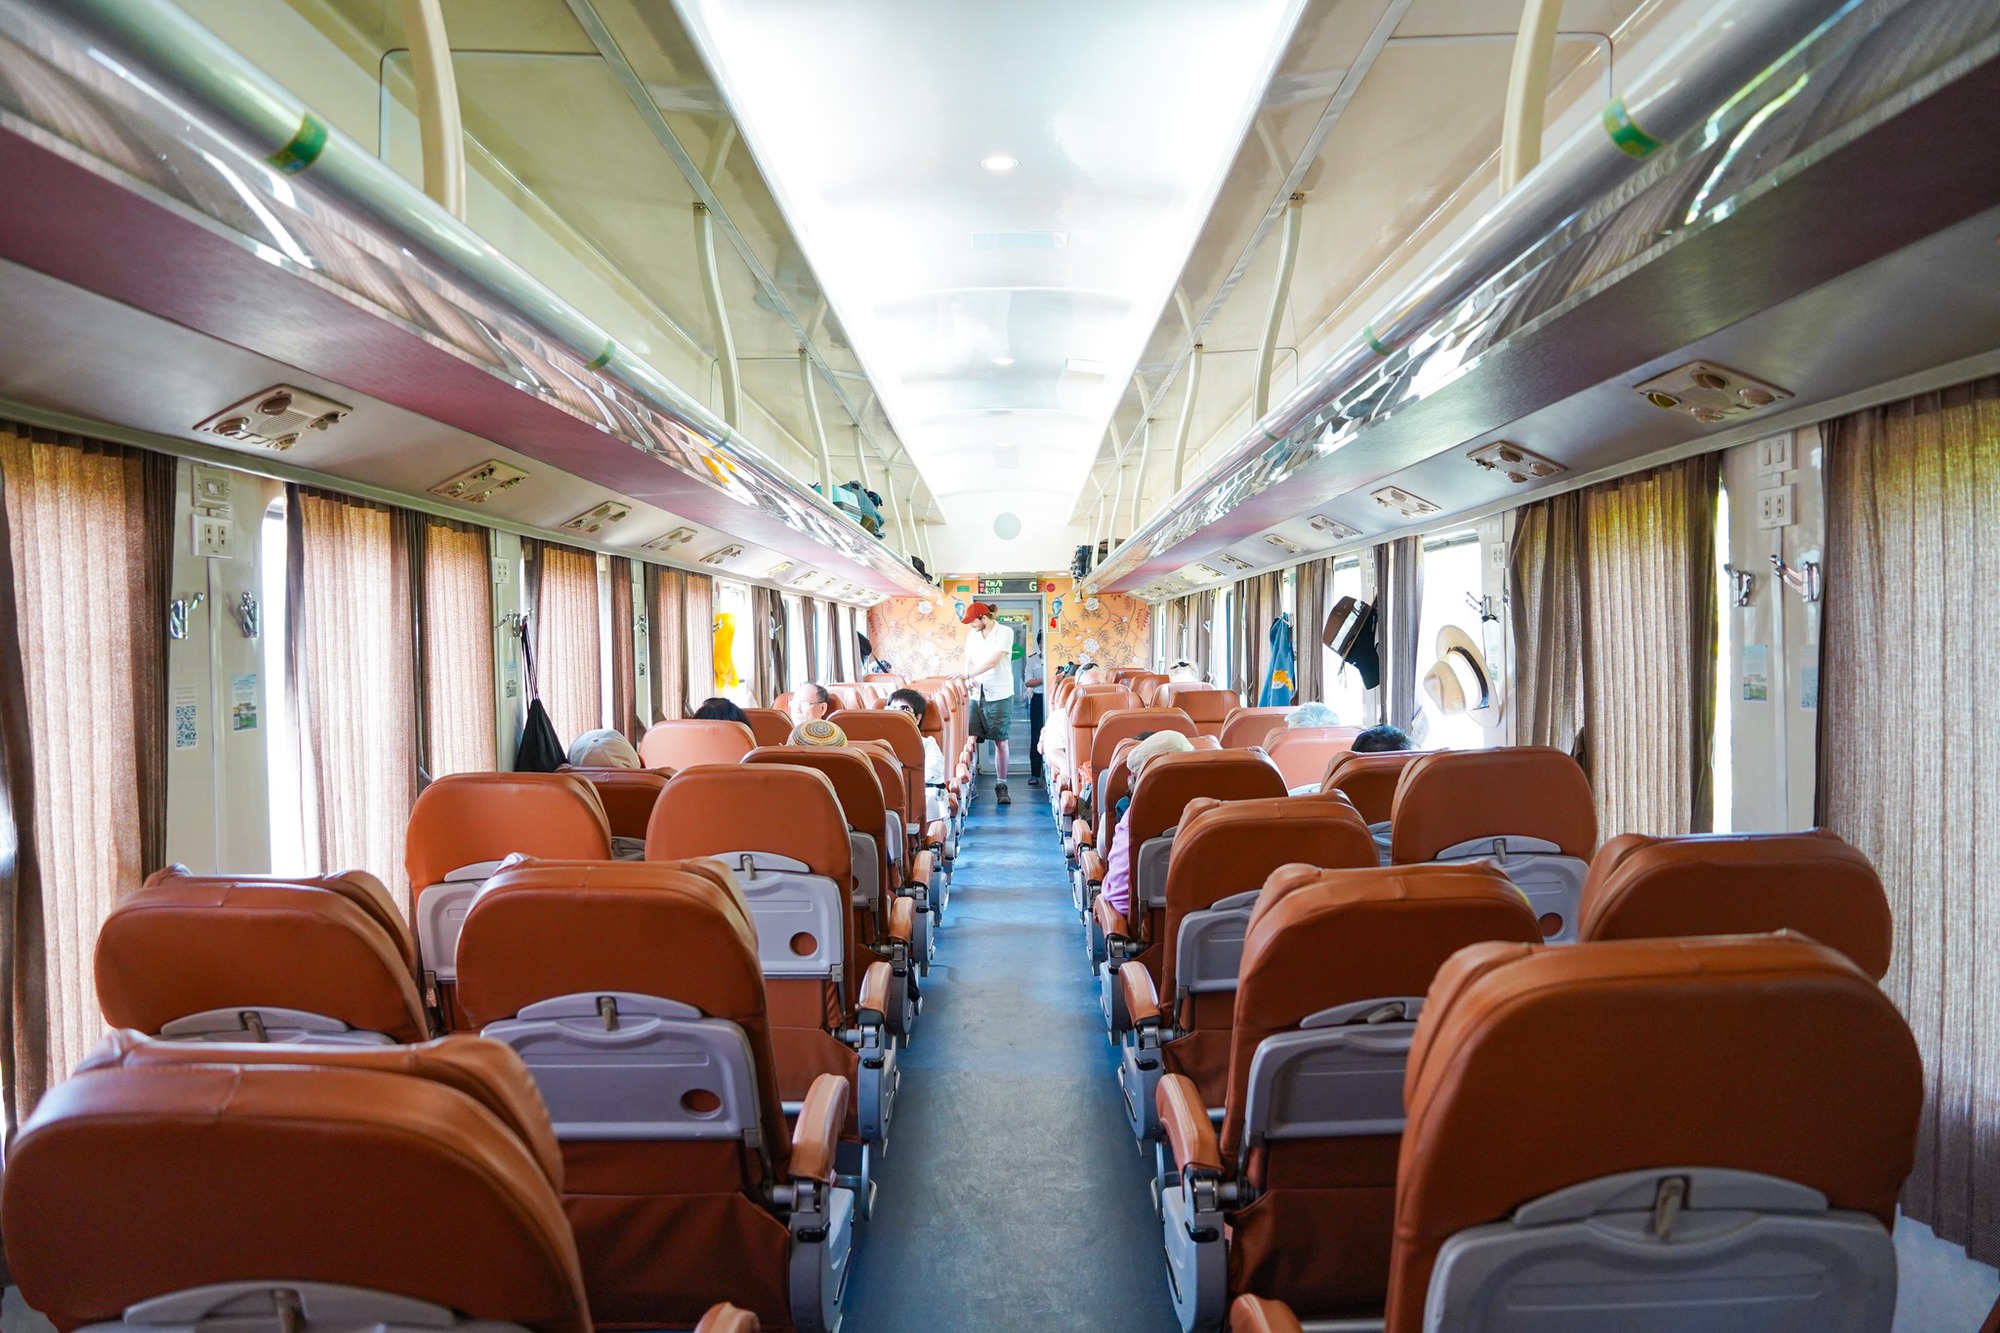 Chuyến tàu di sản qua đường sắt đẹp nhất Việt Nam, vé hơn 100.000 đồng, du khách nhận xét: Rất đáng thử!- Ảnh 7.